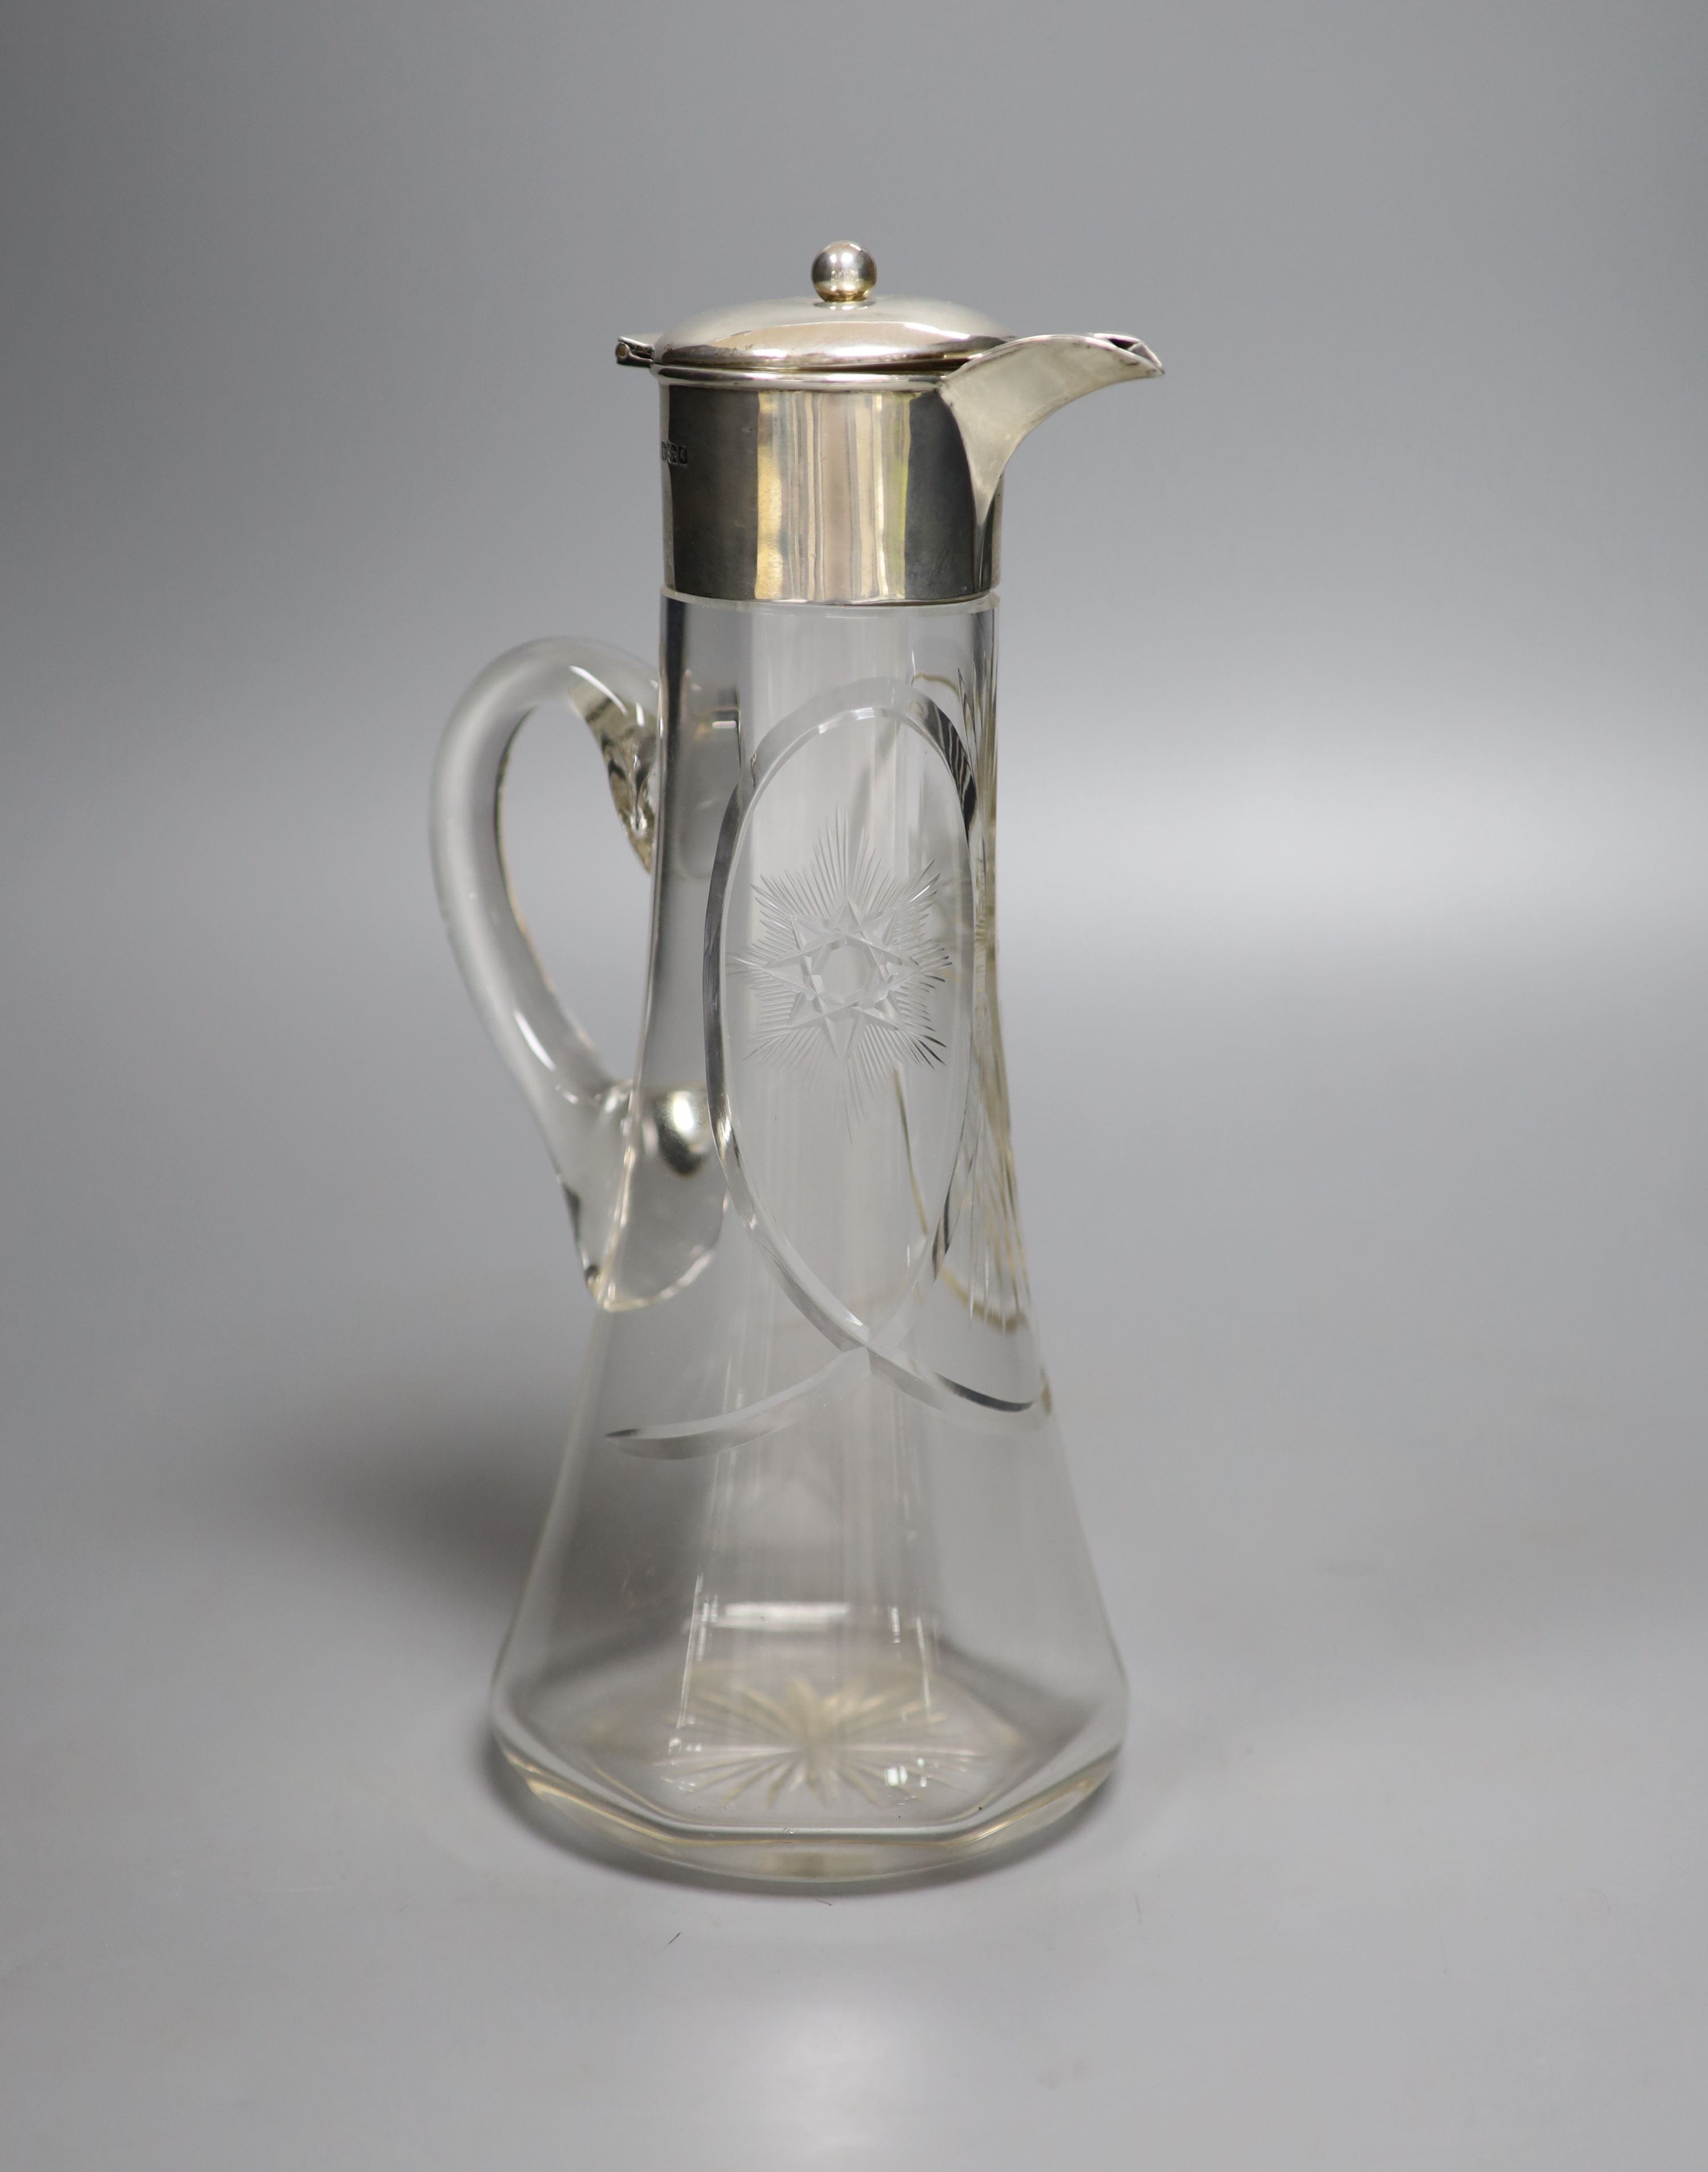 An Edwardian silver mounted glass claret jug, James Deakin & Sons, Sheffield, 1908, 26.2cm.